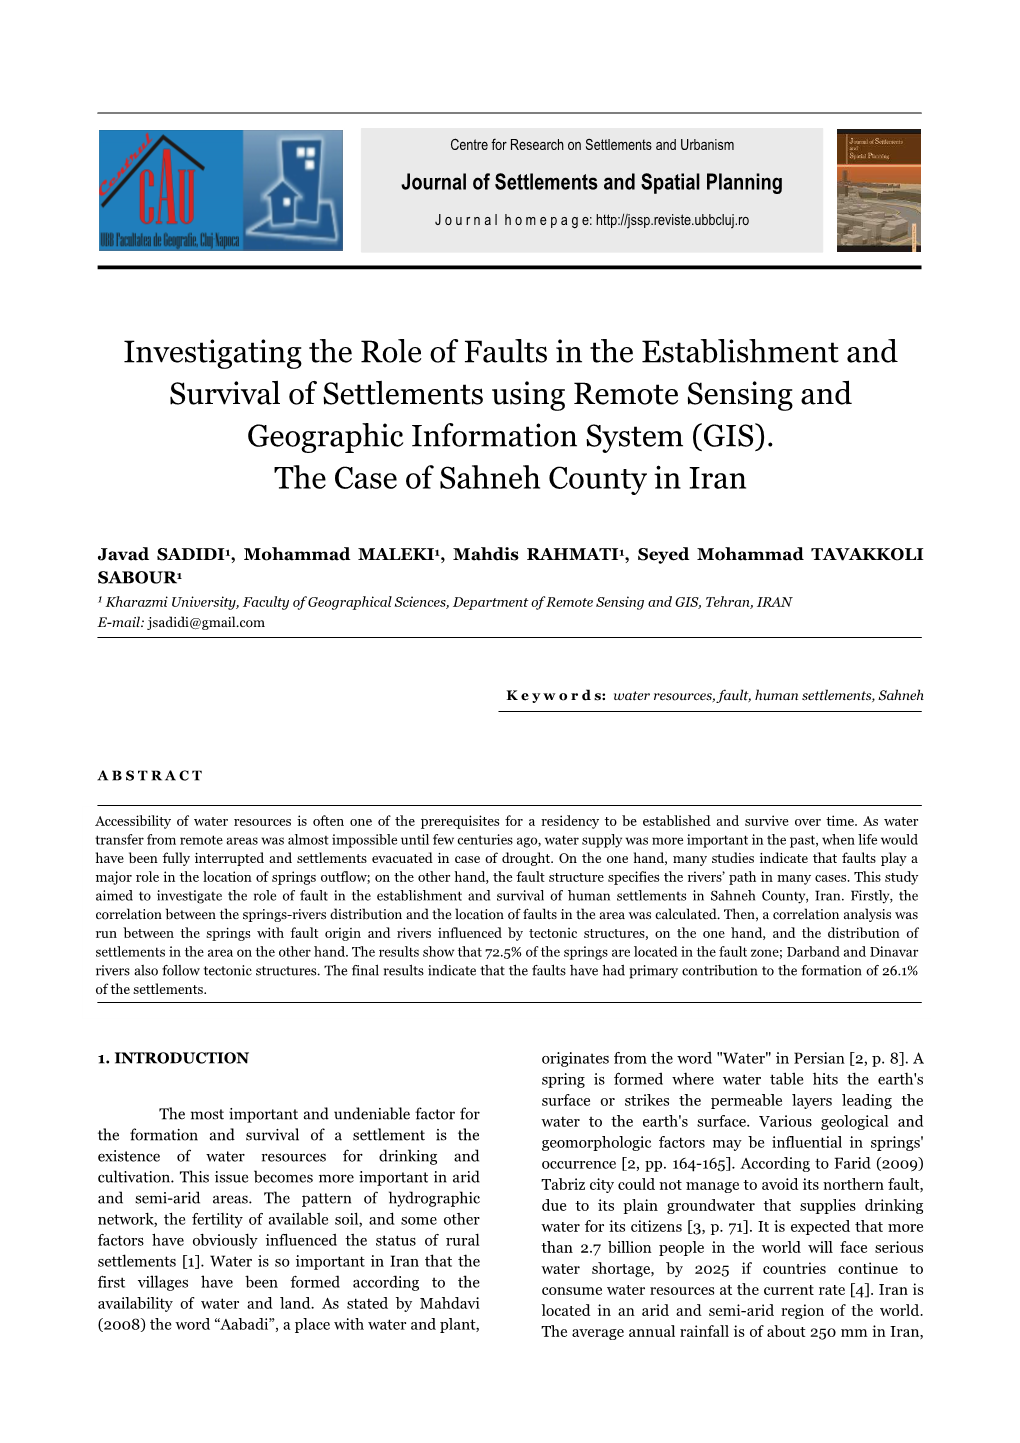 Javad SADIDI, Mohammad MALEKI, Mahdis RAHMATI, Seyed Mohammad TAVAKKOLI SABOUR Journal of Settlements and Spatial Planning, Vol